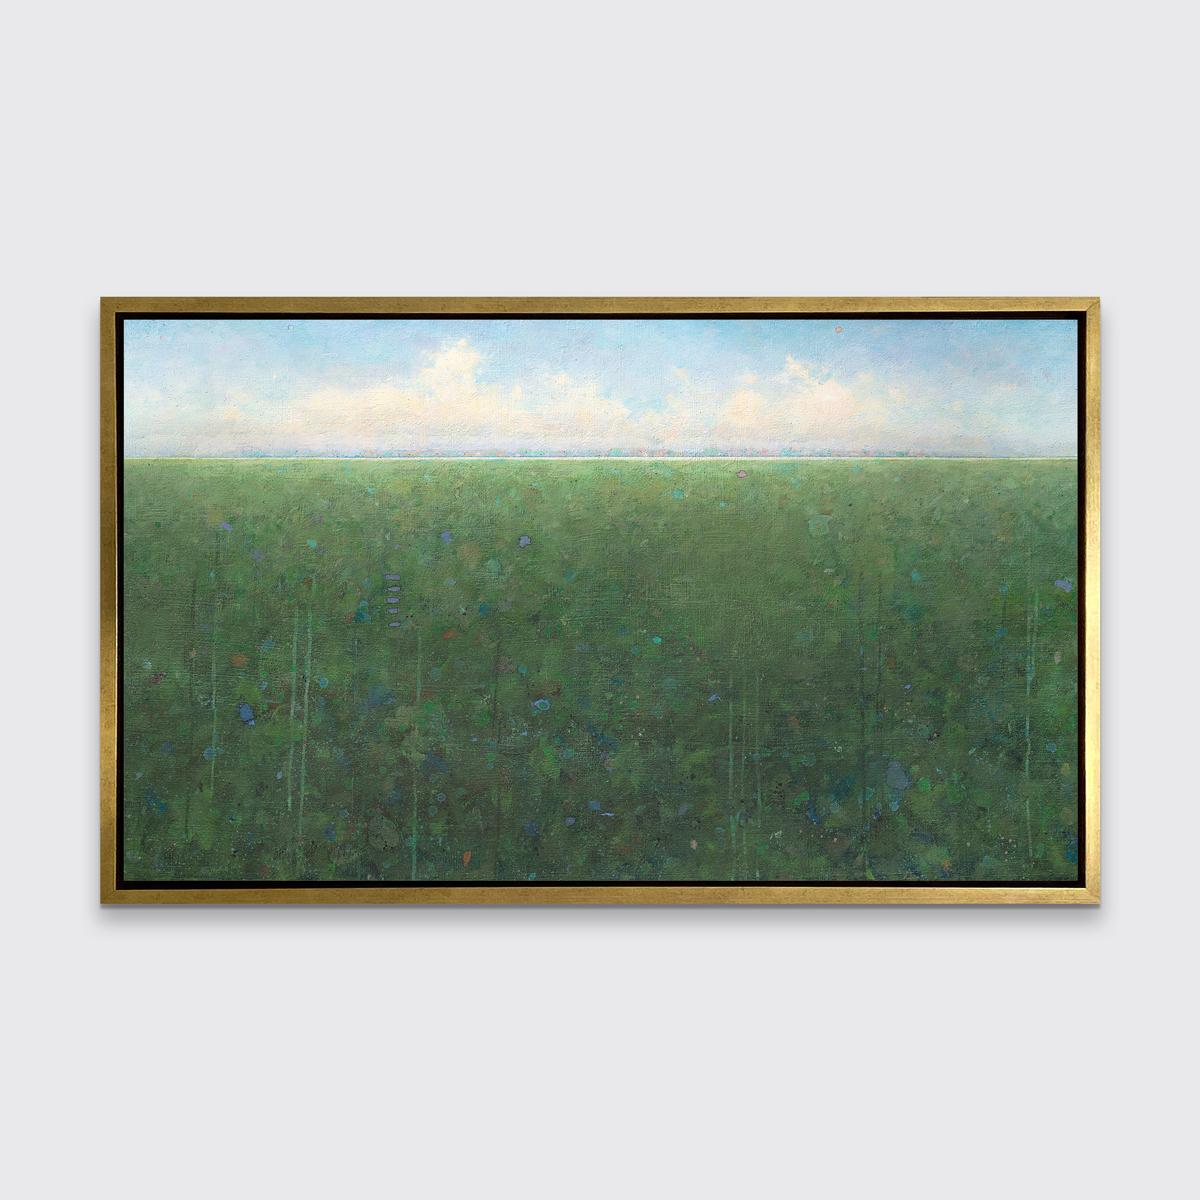 Ce paysage abstrait imprimé en édition limitée par Elwood Howell présente la ligne d'horizon élevée caractéristique de l'artiste. Une terre luxuriante, verte et abstraite s'étend sur toute la largeur de la composition, avec des accents colorés